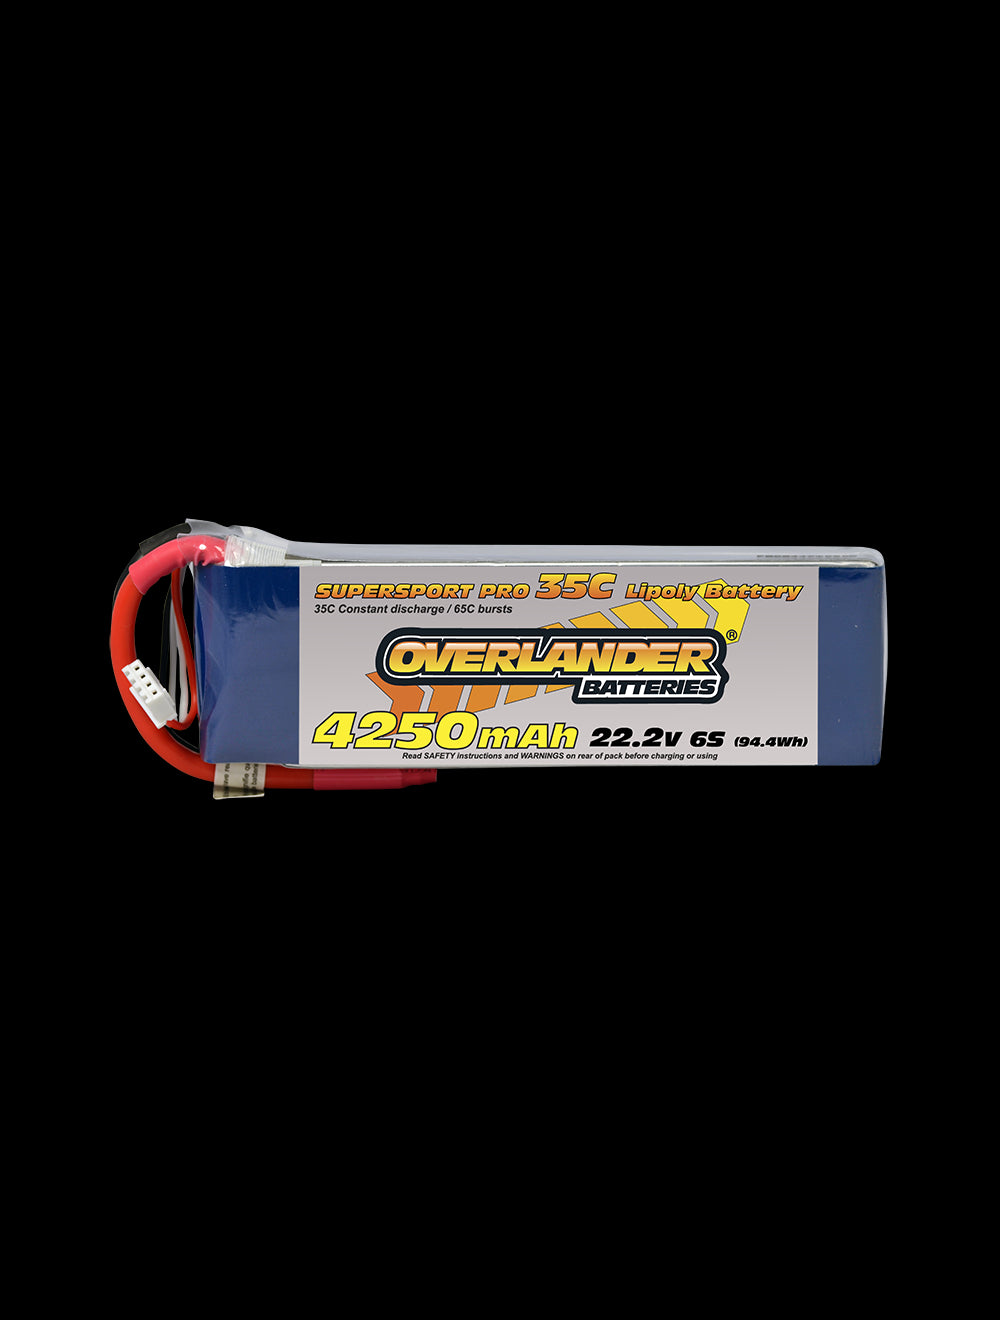 Overlander 4250mAh 22.2V 6S 35C Supersport Pro LiPo Battery - EC5 Connector 2478